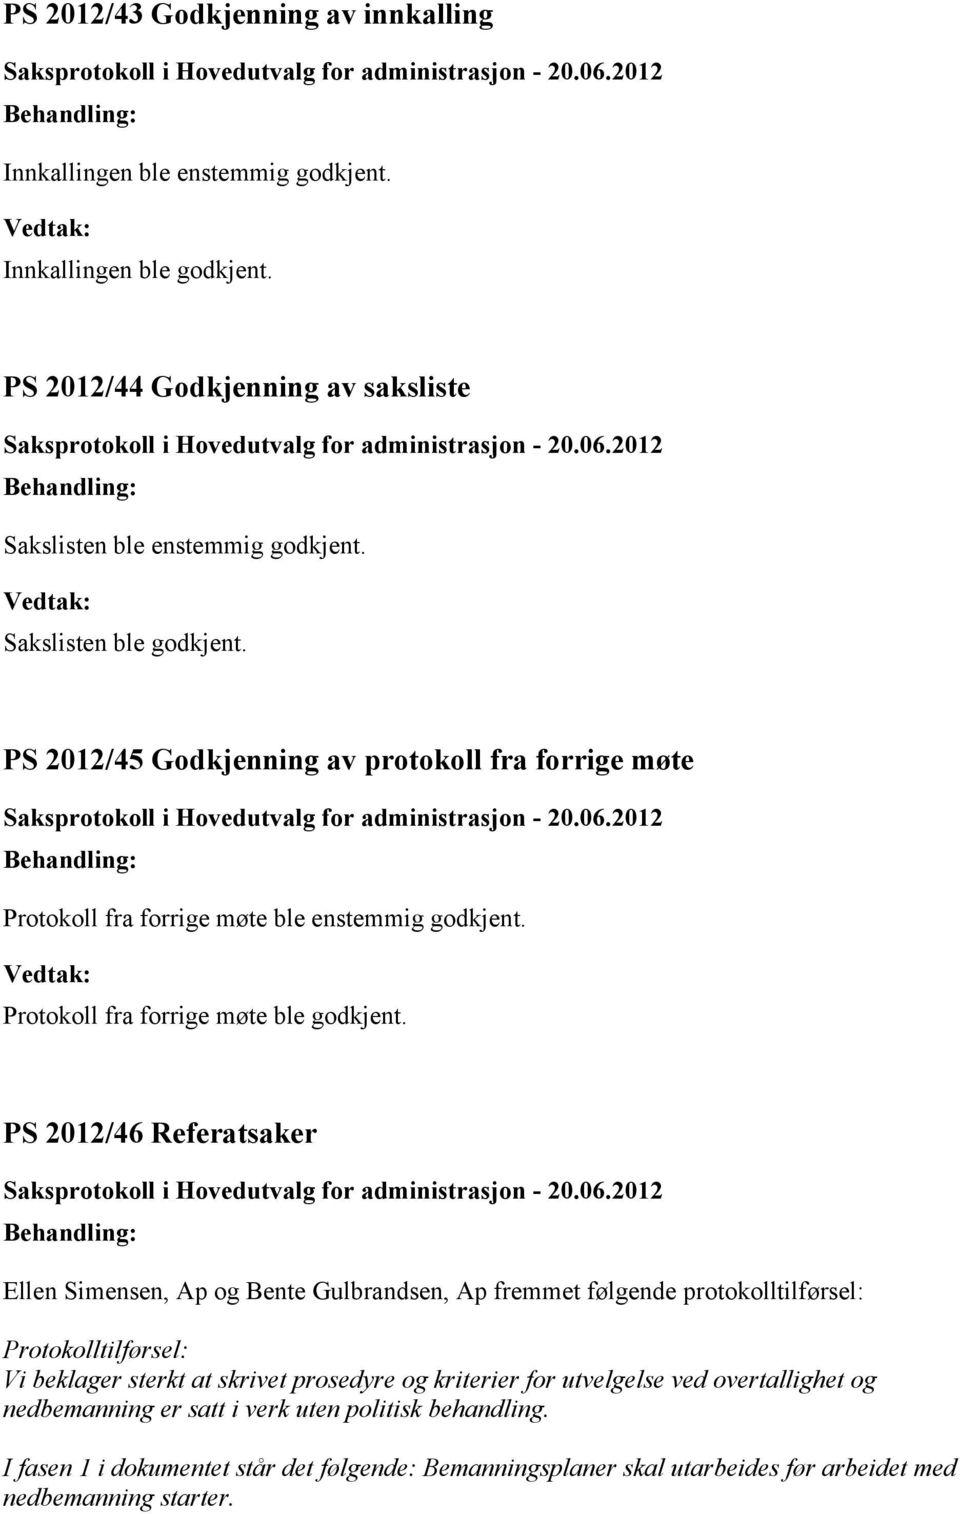 2012/46 Referatsaker Ellen Simensen, Ap og Bente Gulbrandsen, Ap fremmet følgende protokolltilførsel: Protokolltilførsel: Vi beklager sterkt at skrivet prosedyre og kriterier